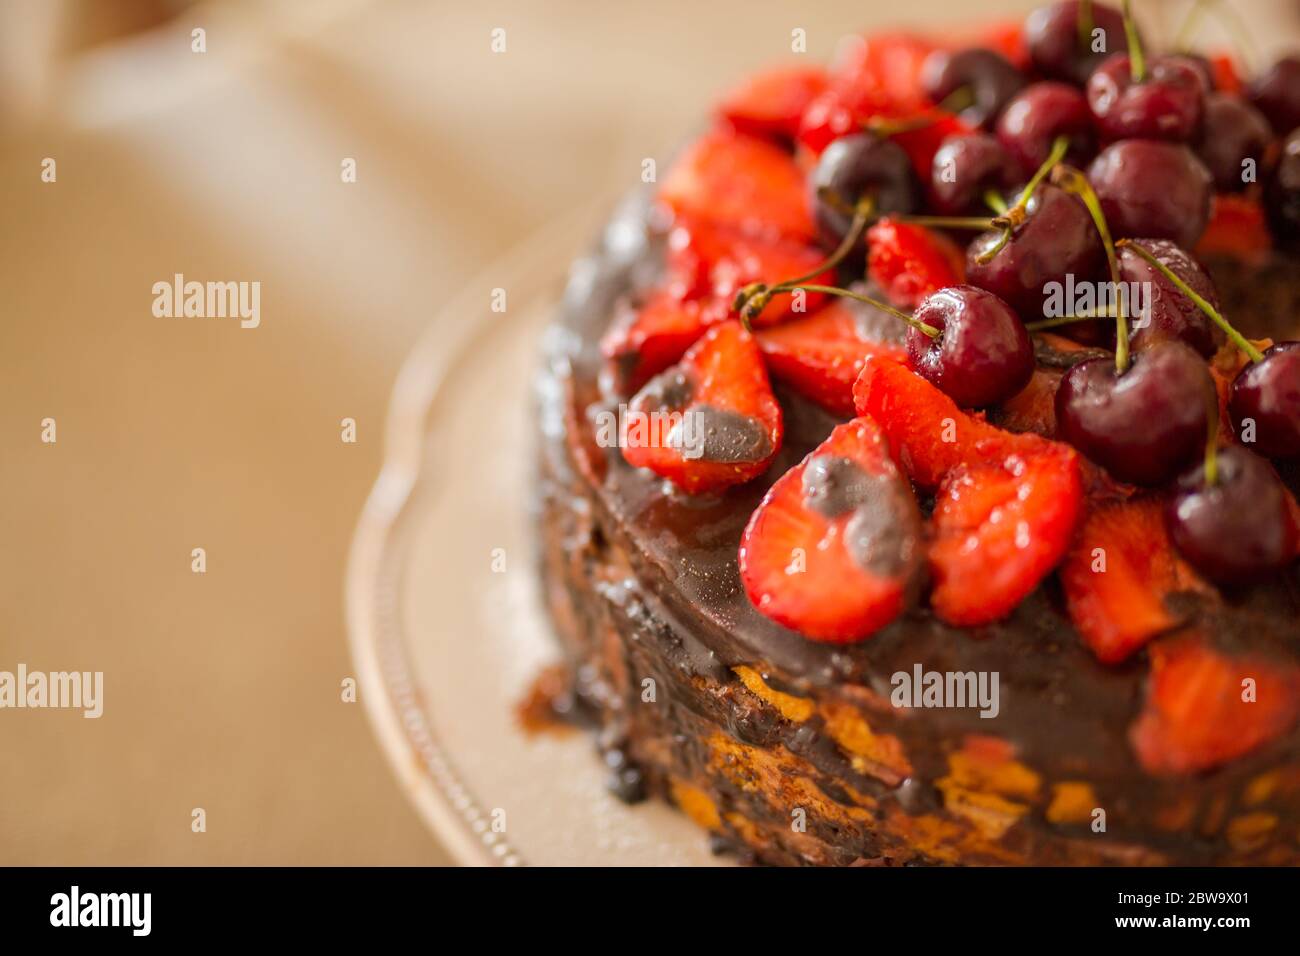 Traditionelle hausgemachte Schokoladenkuchen Süßgebäck Dessert mit brauner Glasur, Kirschen, Himbeere, Johannisbeere auf Vintage-Holz Hintergrund. Foto mit dunklen Speisen Stockfoto